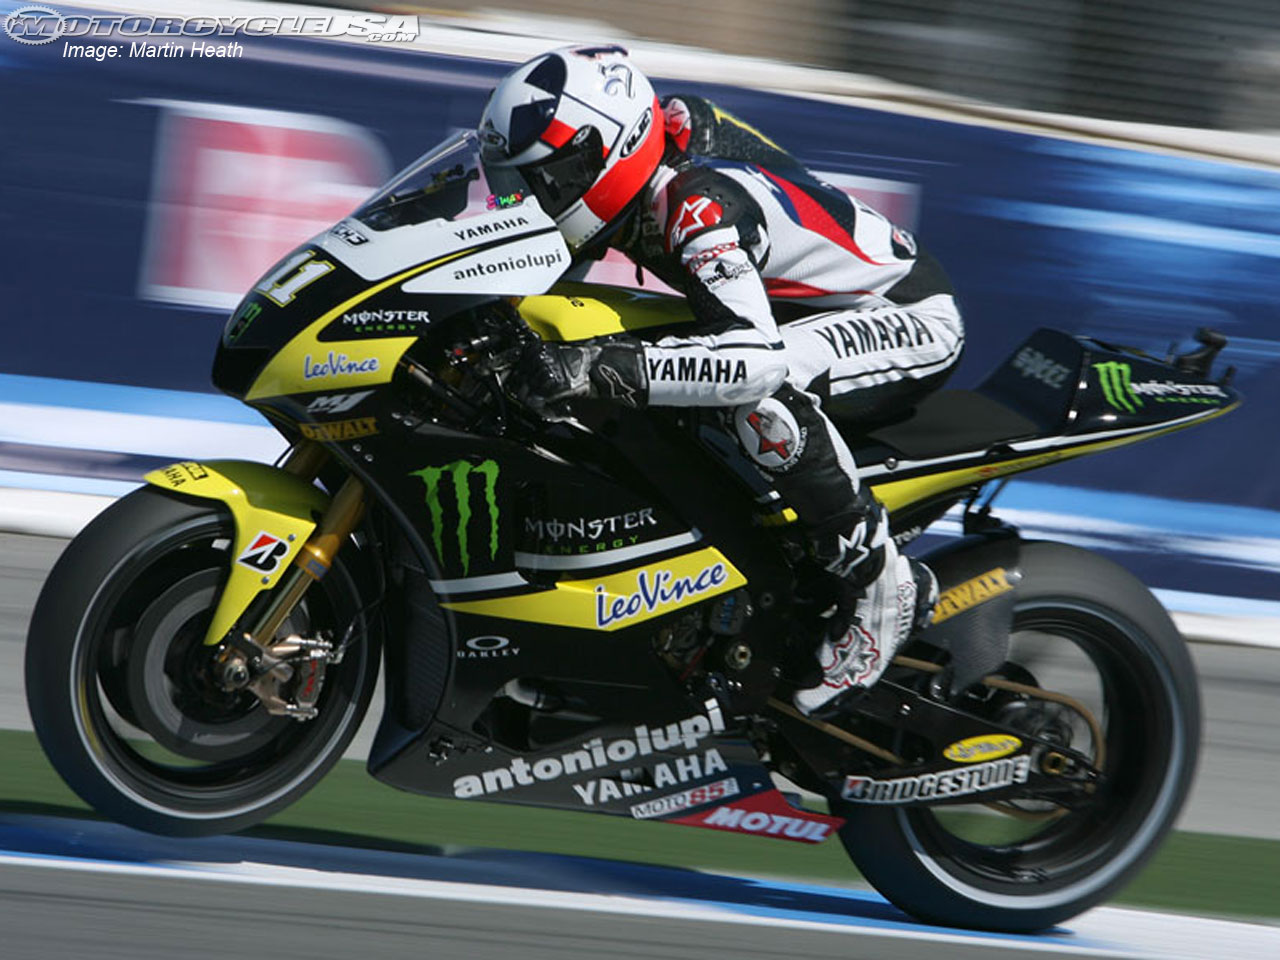 Download HQ MotoGP wallpaper / Sports / 1280x960